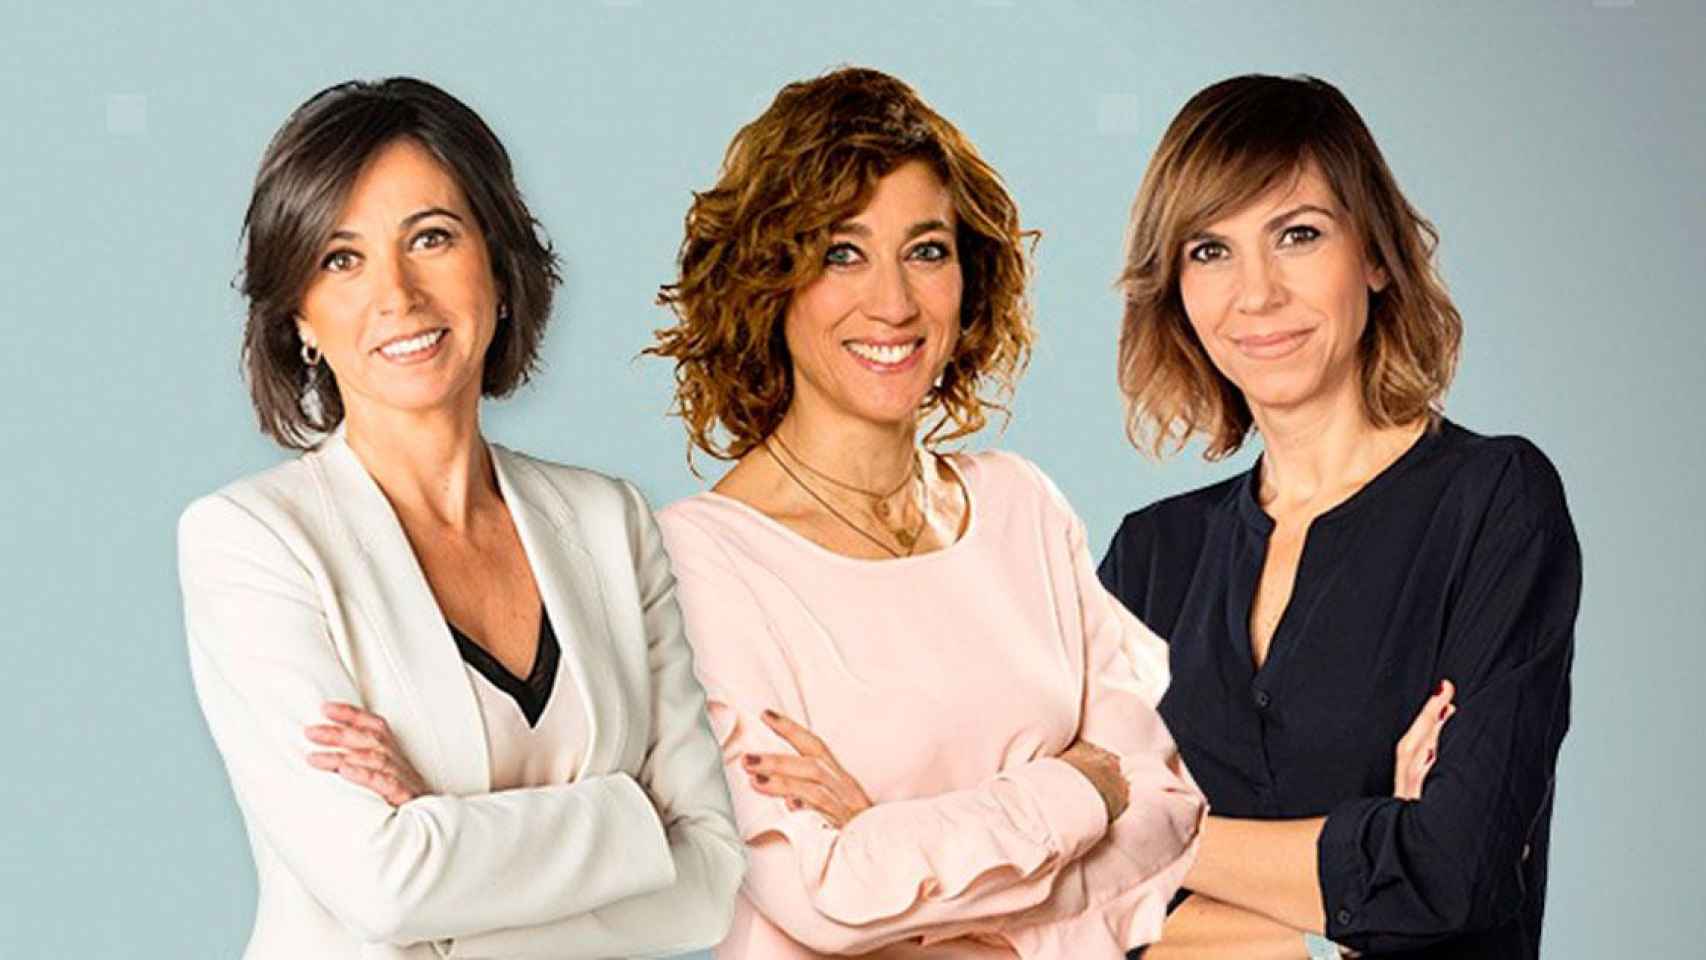 Lidia Heredia, Helena Garcia Melero y Cristina Puig serán las presentadoras de 'Les Campanades' /TV3